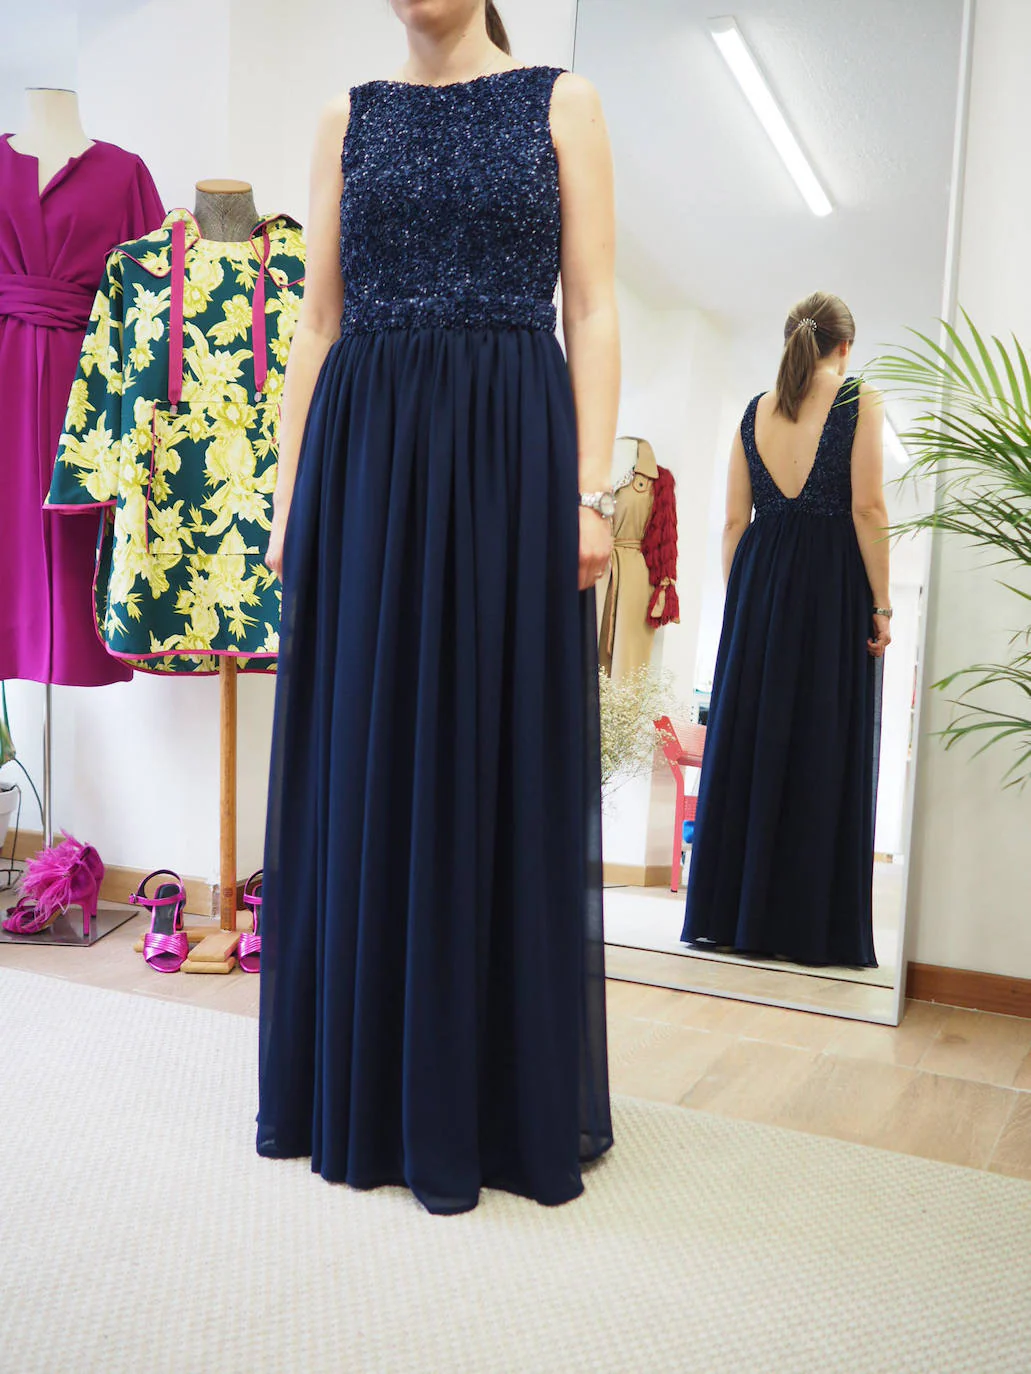 Vestido azul oscuro largo confeccionado en dos piezas: un body en paillettes y una falda realizada en georgette de seda. Diseño del modisto portugalujo Eder Aurre (400 euros).